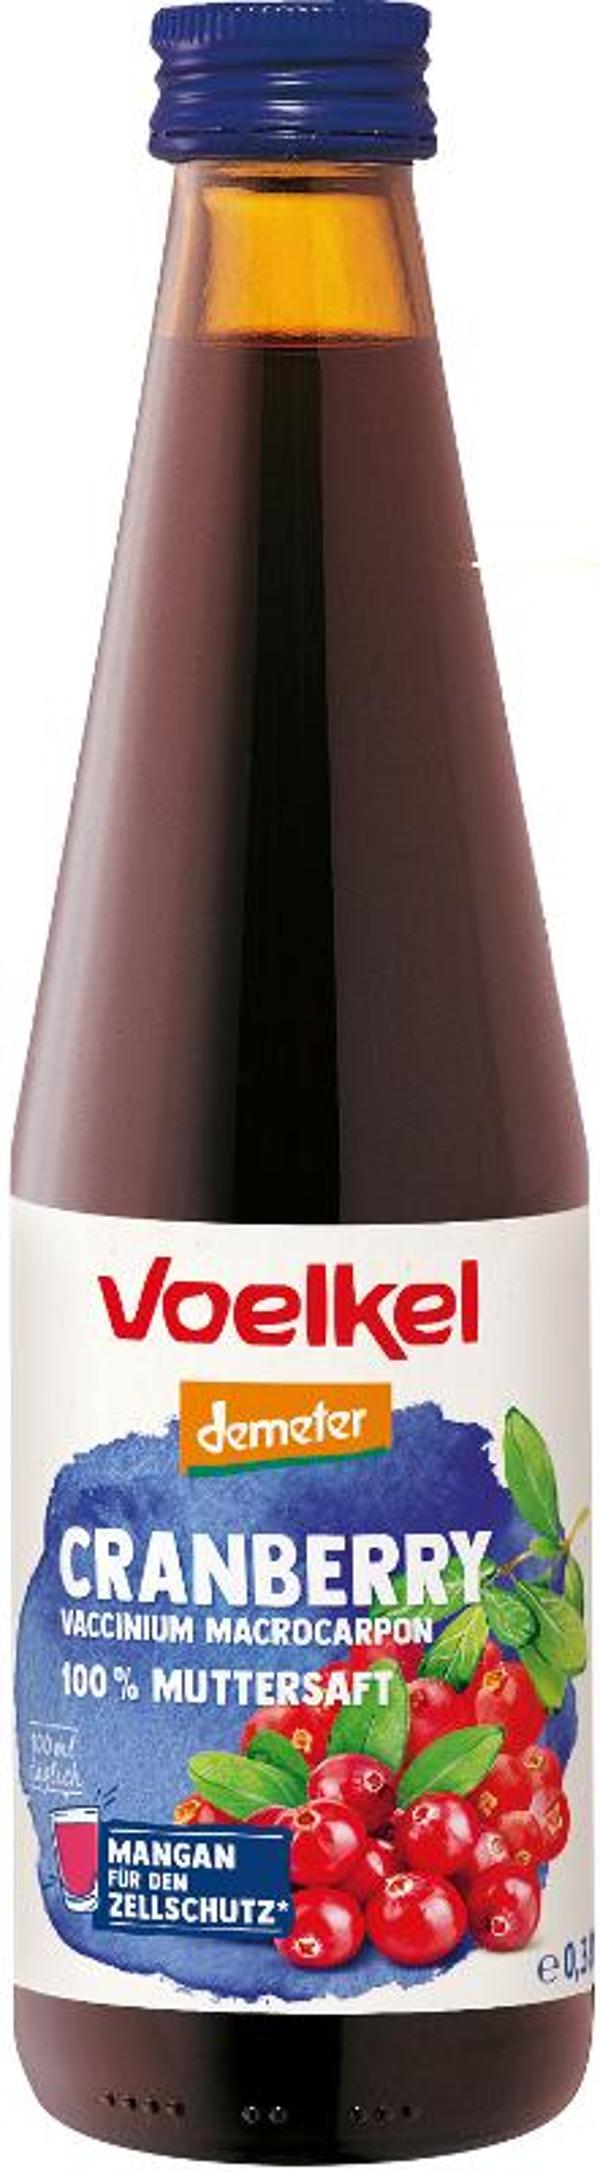 Produktfoto zu VPE Cranberry pur 100% Muttersaft 12x0,33 l Voelkel